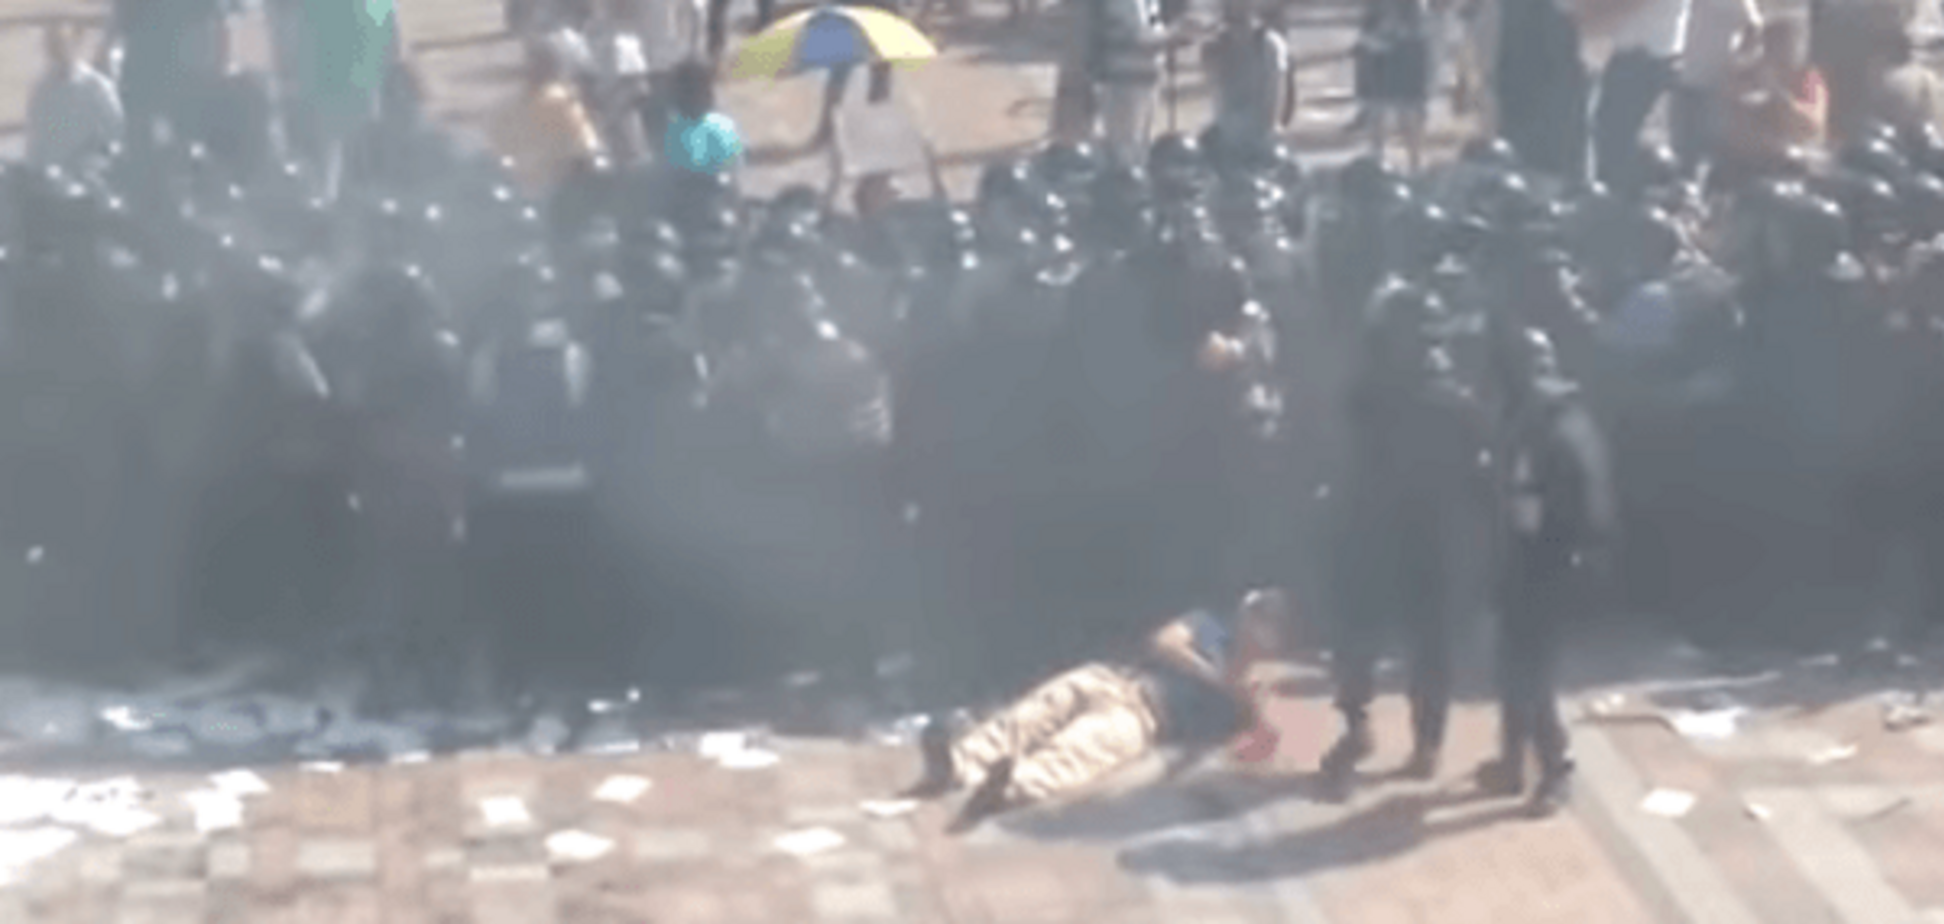 Появилось замедленное видео броска боевой гранаты в правоохранителей под Радой